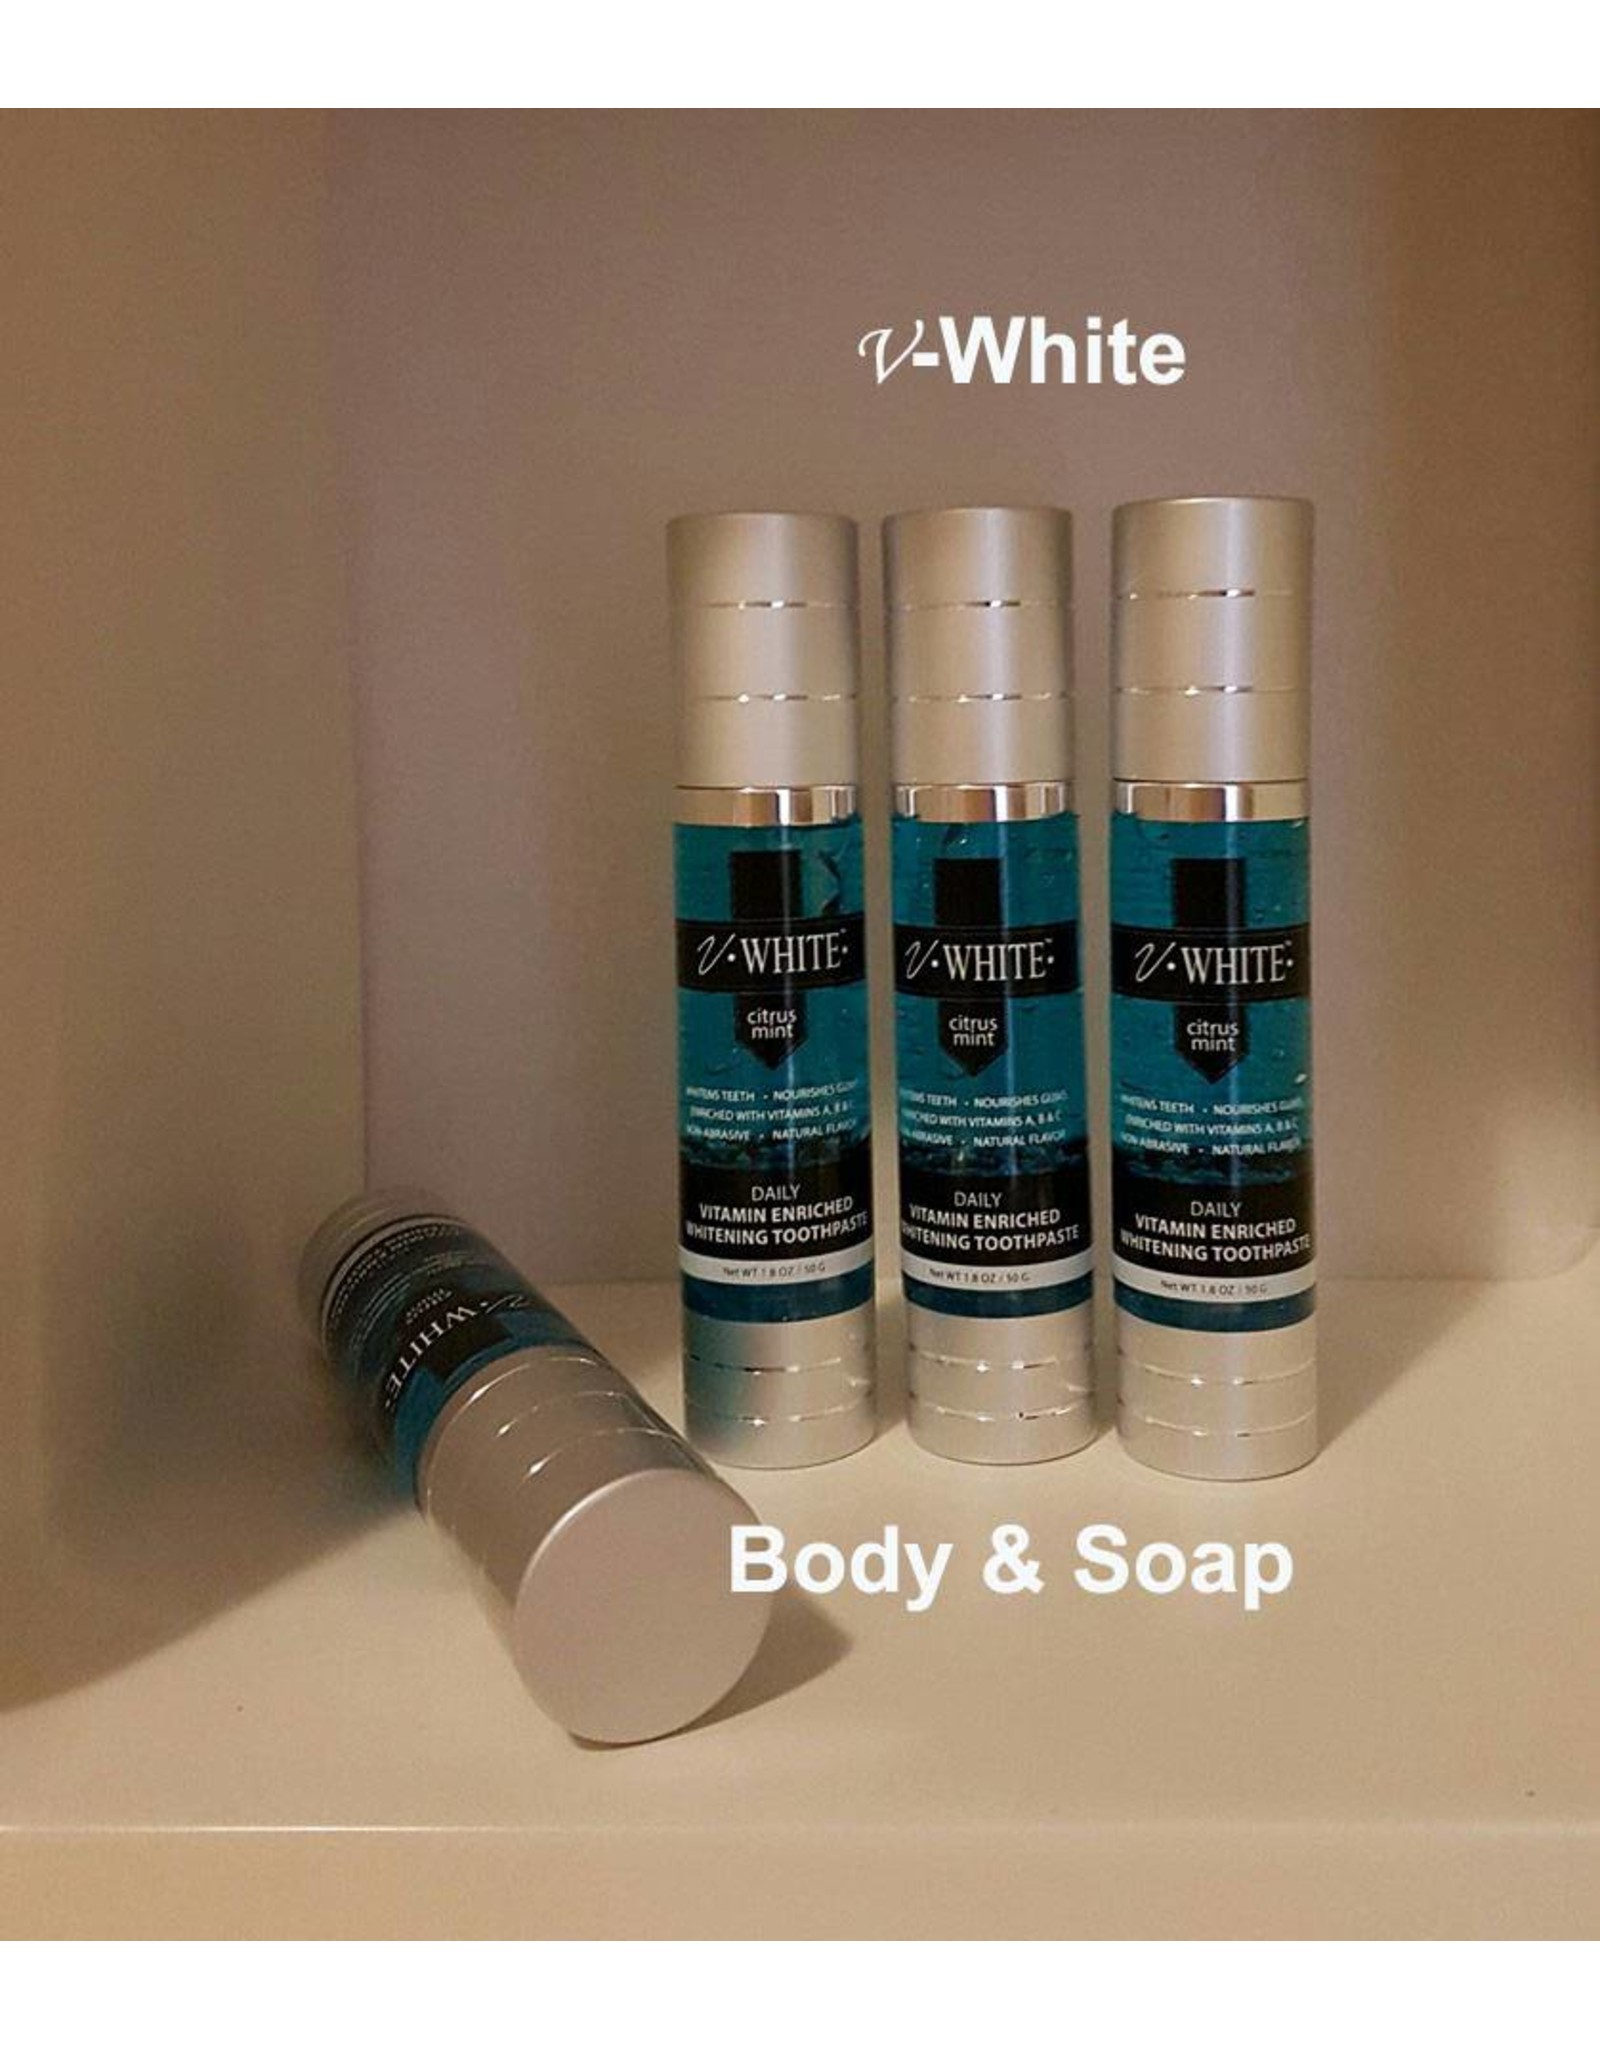 V-White Whitening Tandpasta - Body & Soap